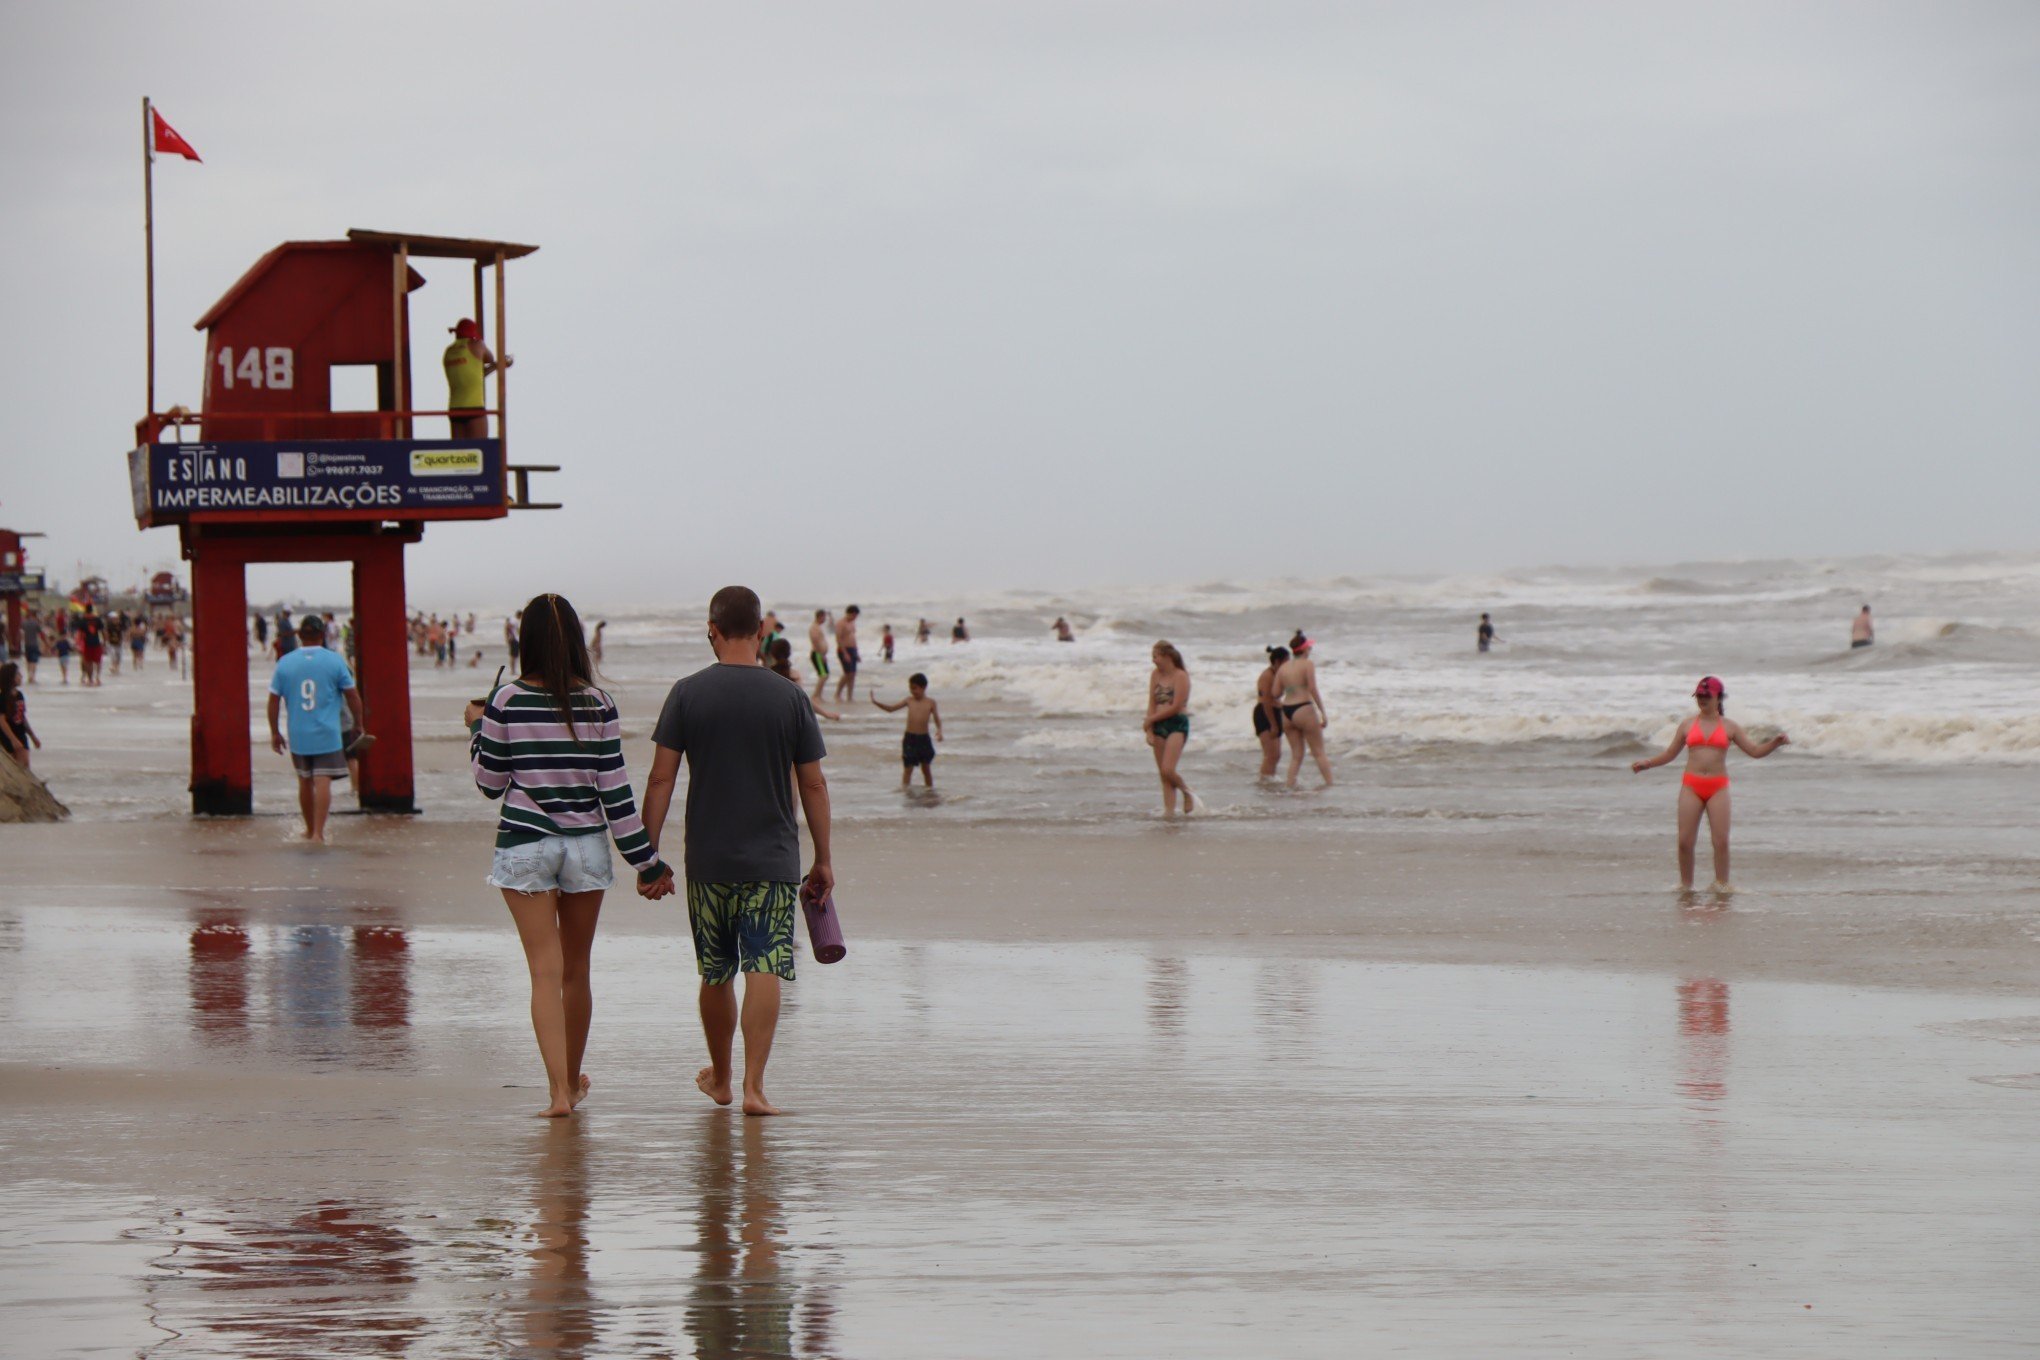 Costelão na beira da praia, chimarrão e sol tímido: gaúchos aproveitam o sábado na praia